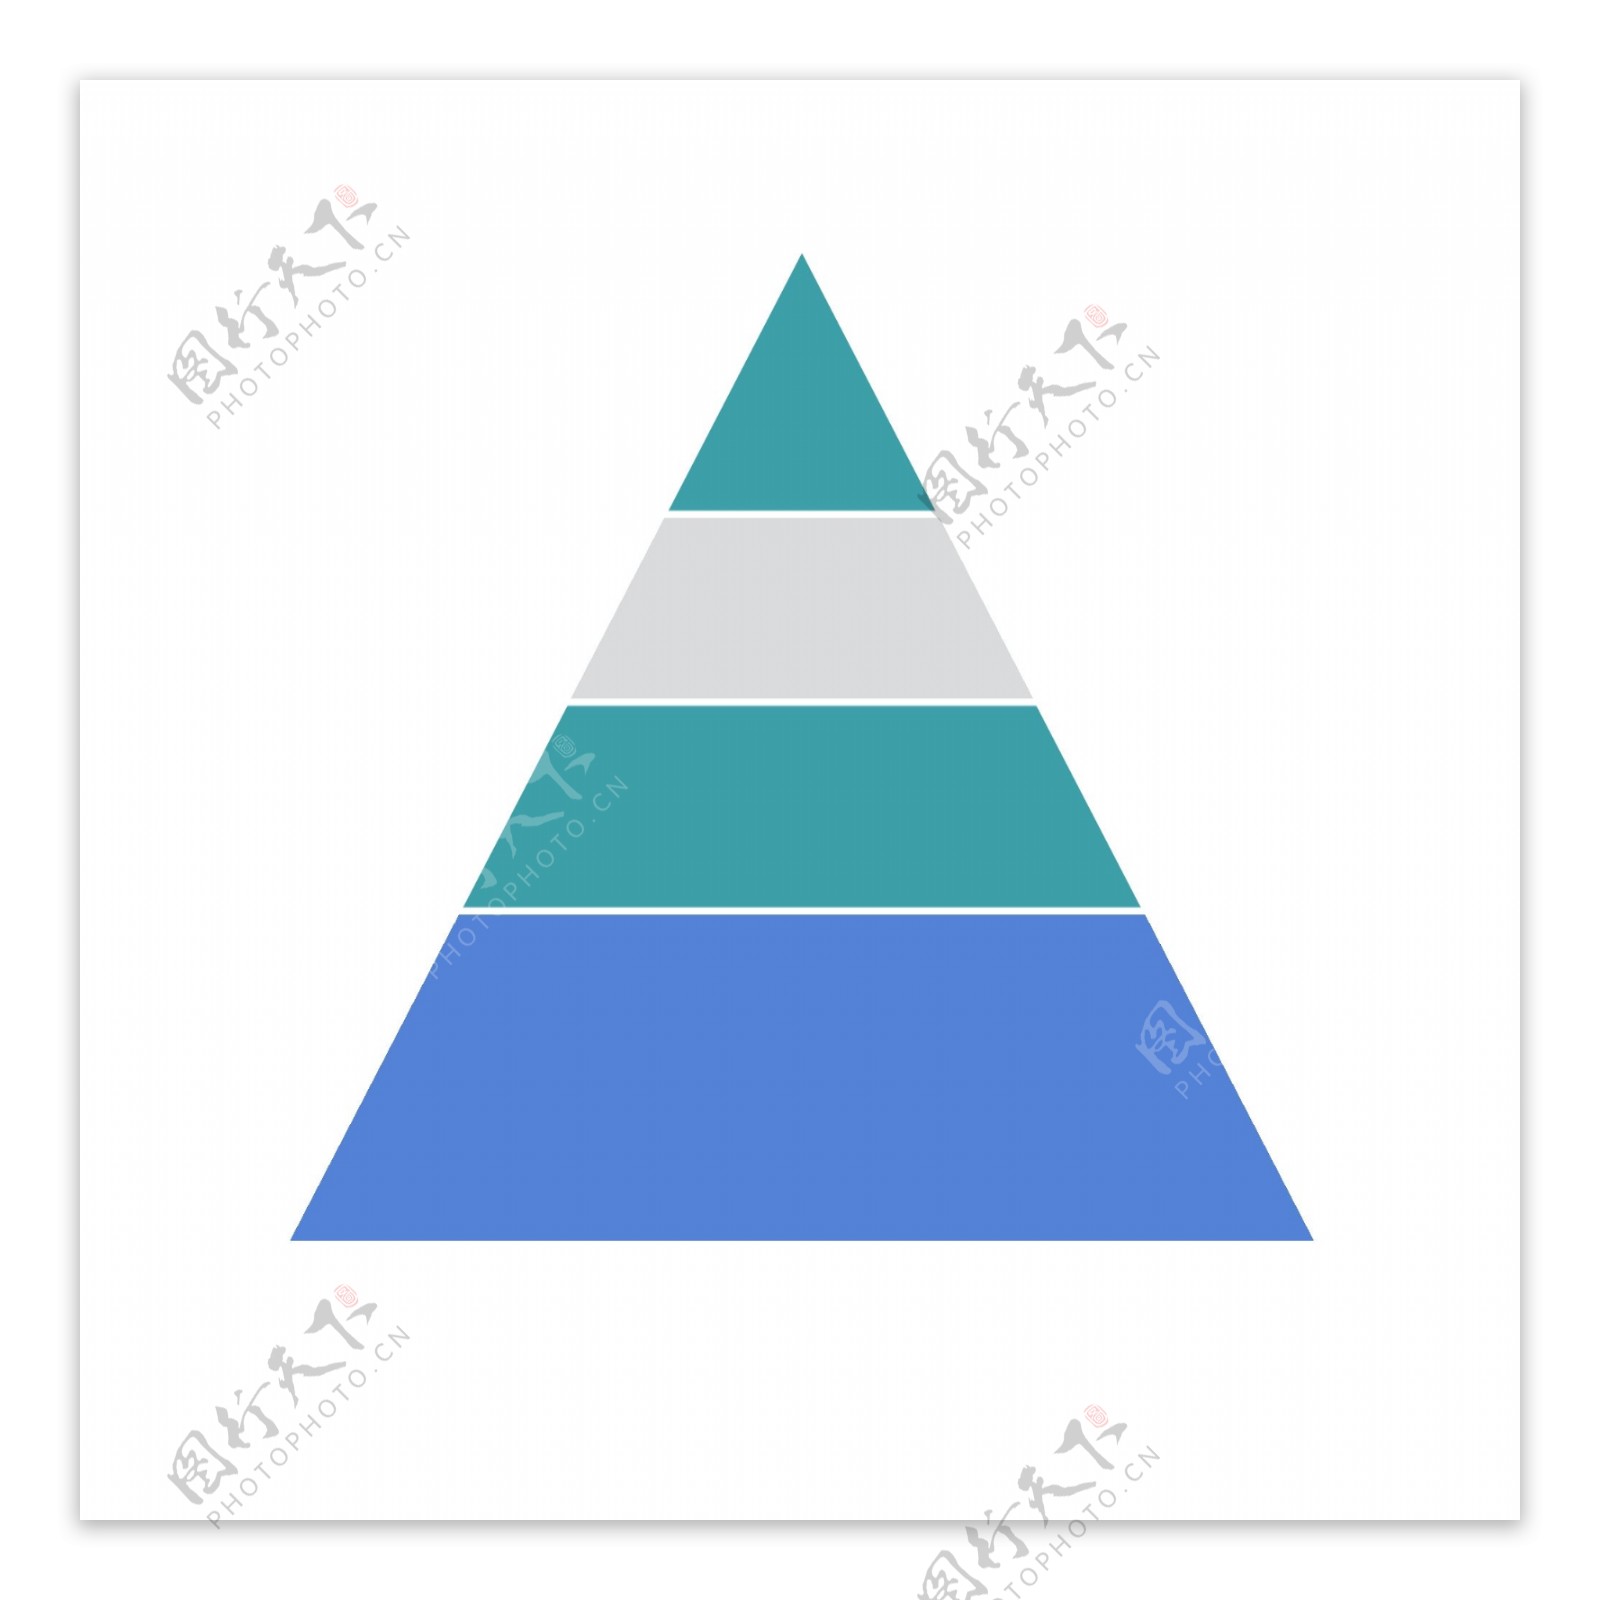 蓝色三角形数据